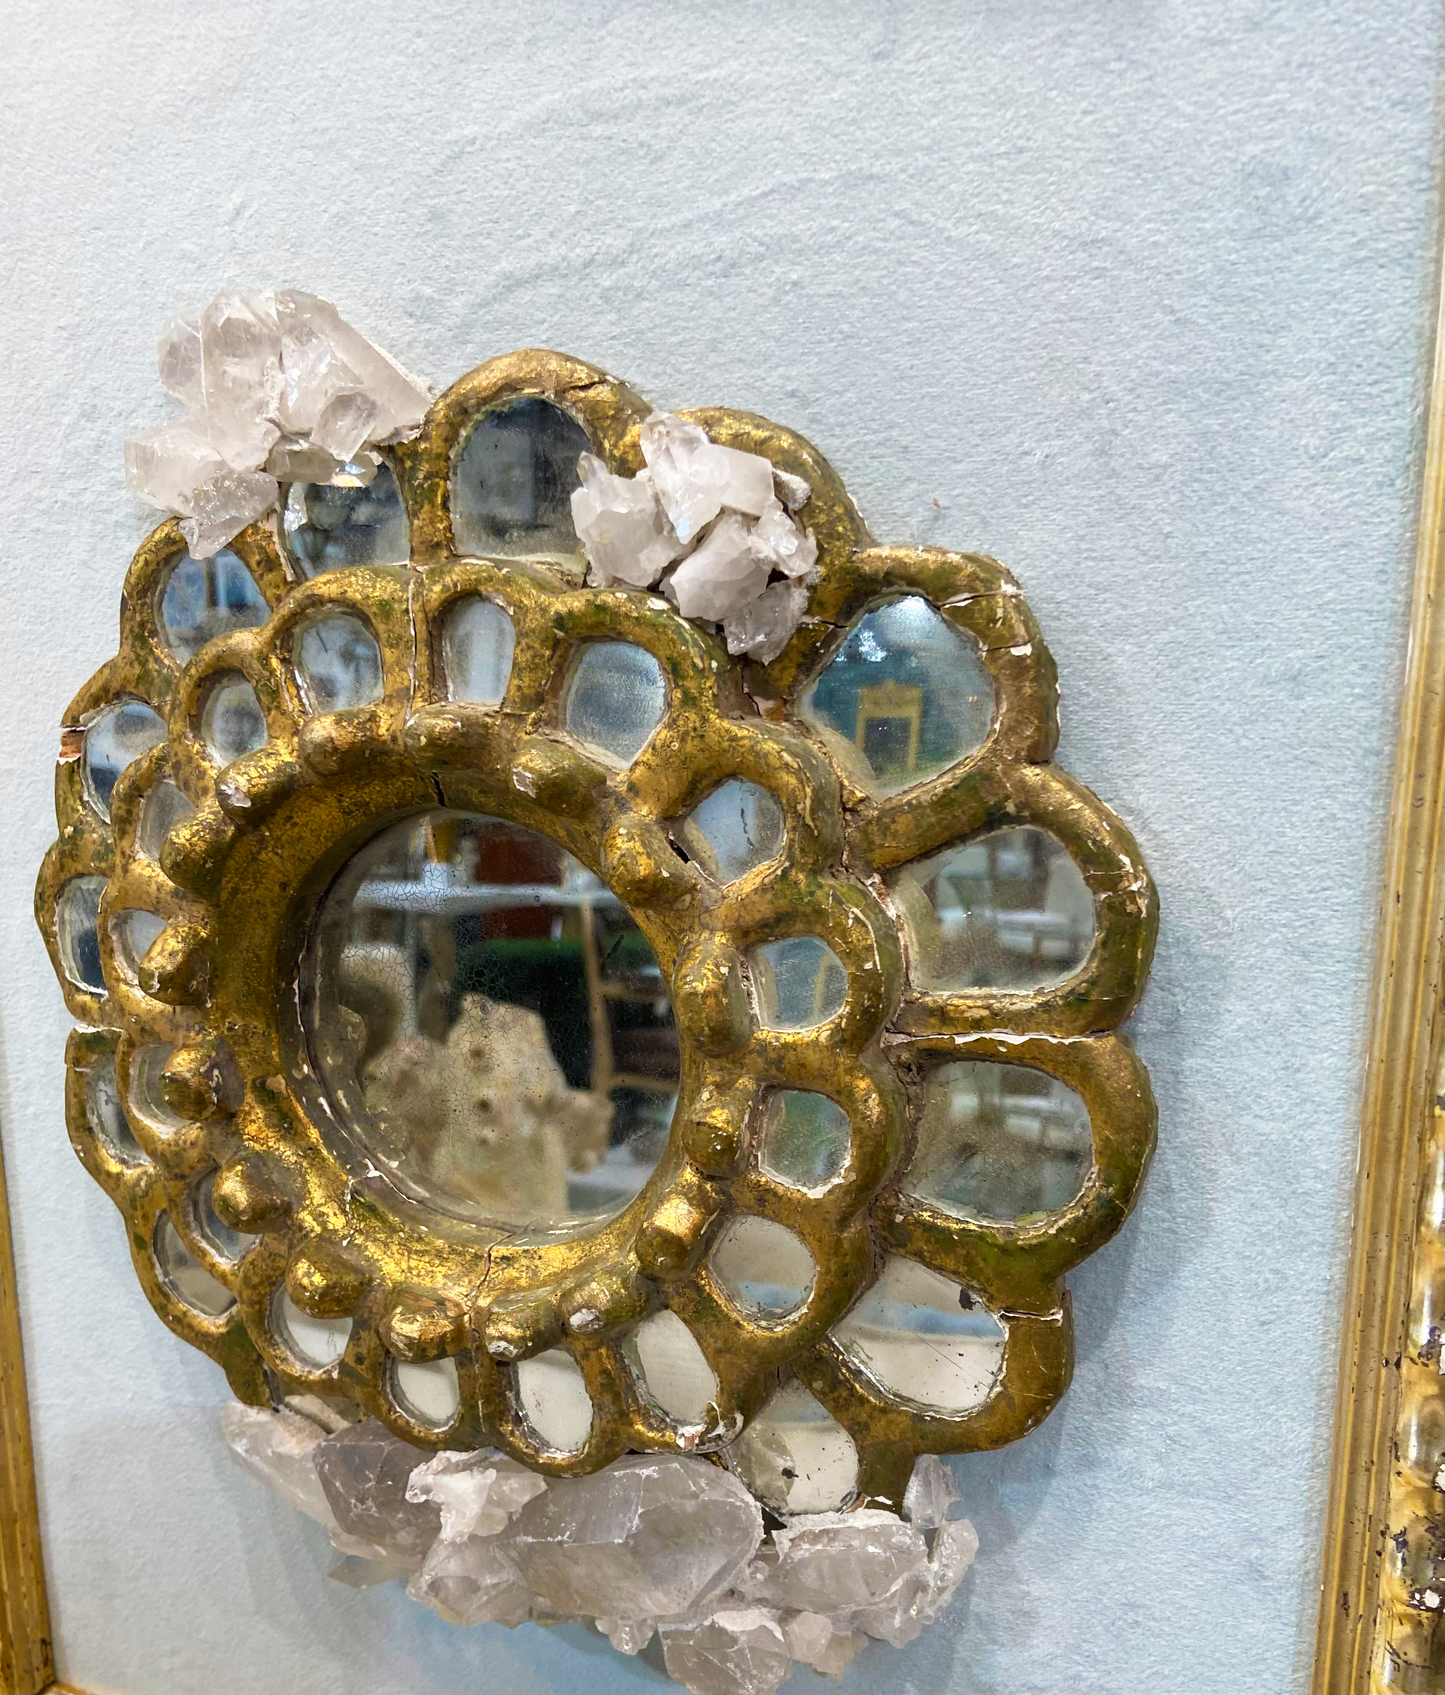 Antique Mirror Center in Antique Frame with Quartz